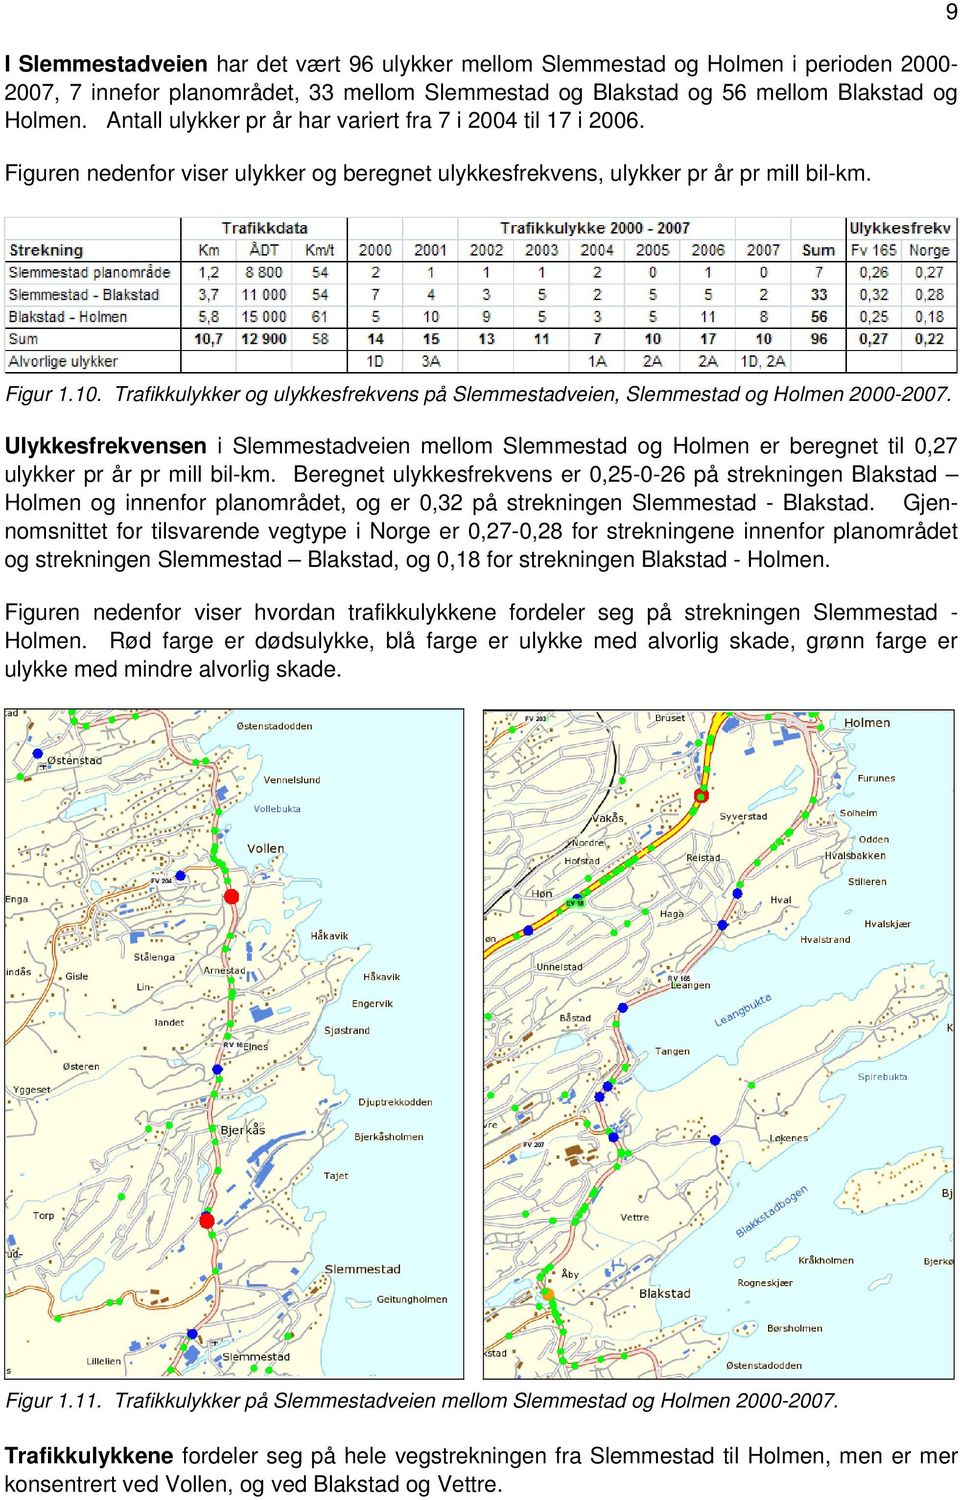 Trafikkulykker og ulykkesfrekvens på Slemmestadveien, Slemmestad og Holmen 2000-2007. Ulykkesfrekvensen i Slemmestadveien mellom Slemmestad og Holmen er beregnet til 0,27 ulykker pr år pr mill bil-km.